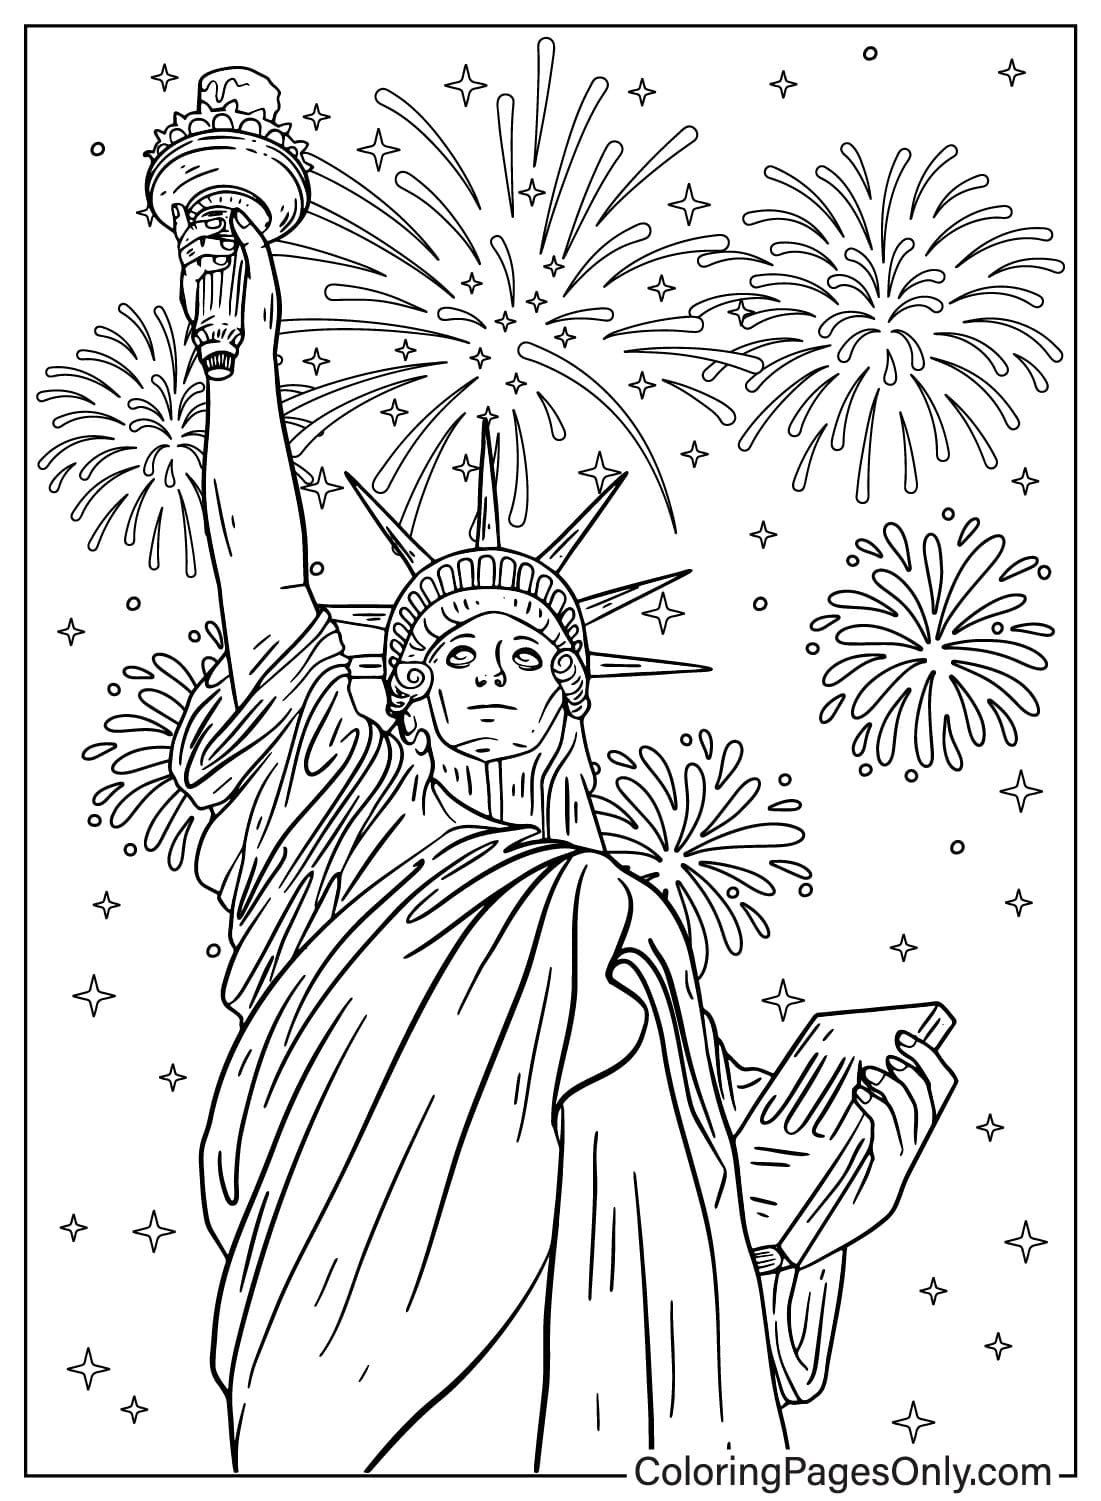 Página para colorear de la Estatua de la Libertad y los fuegos artificiales